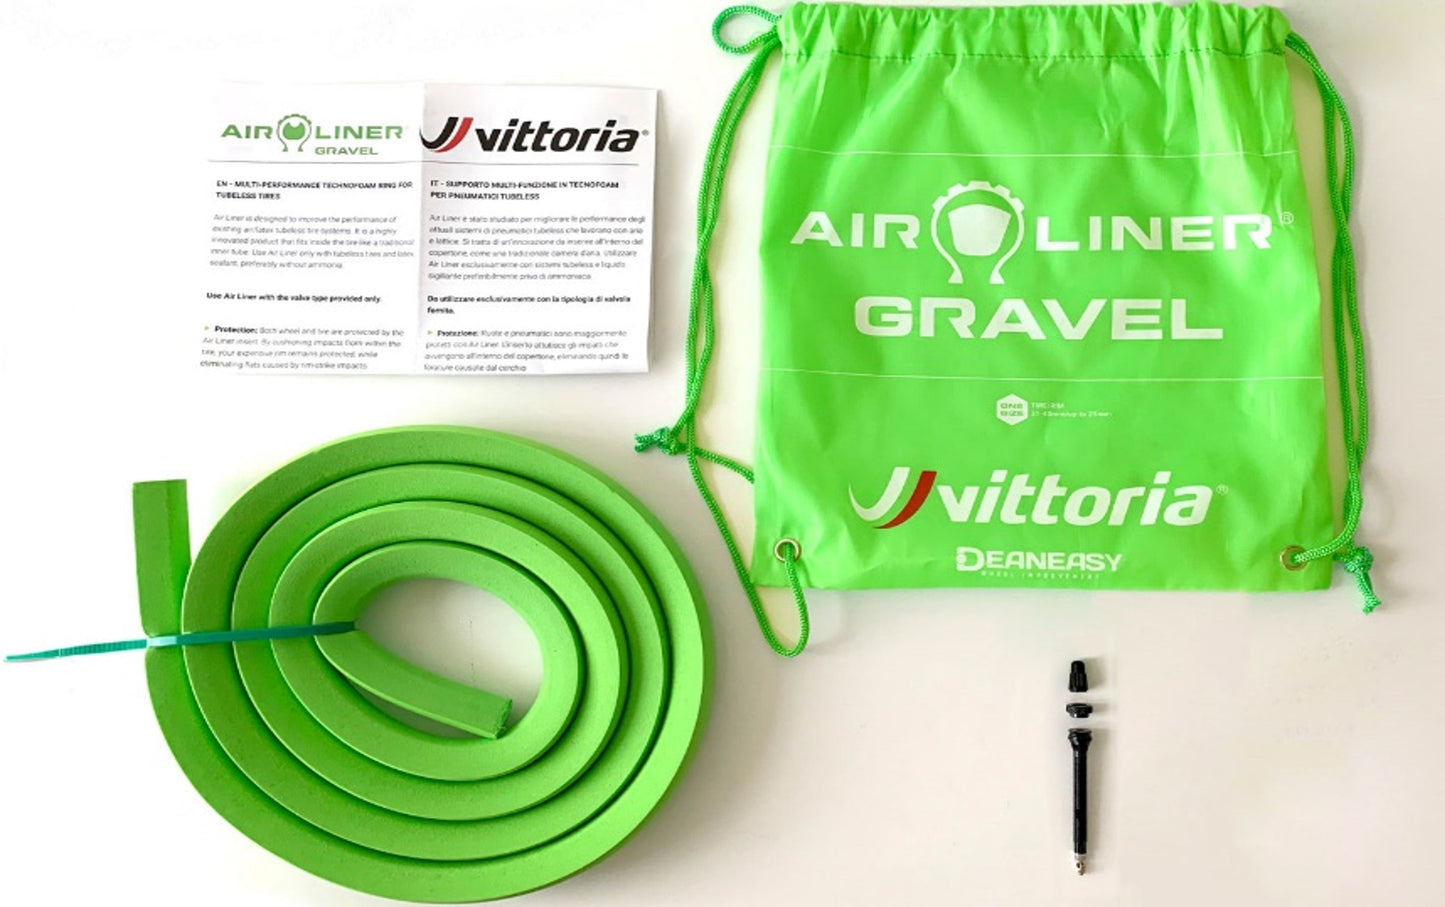 VITTORIA AIR-LINER 泡棉管狀嵌入物 (MTB胎用) / VITTORIA AIR-LINER TIRE INSERT-FOR MTB